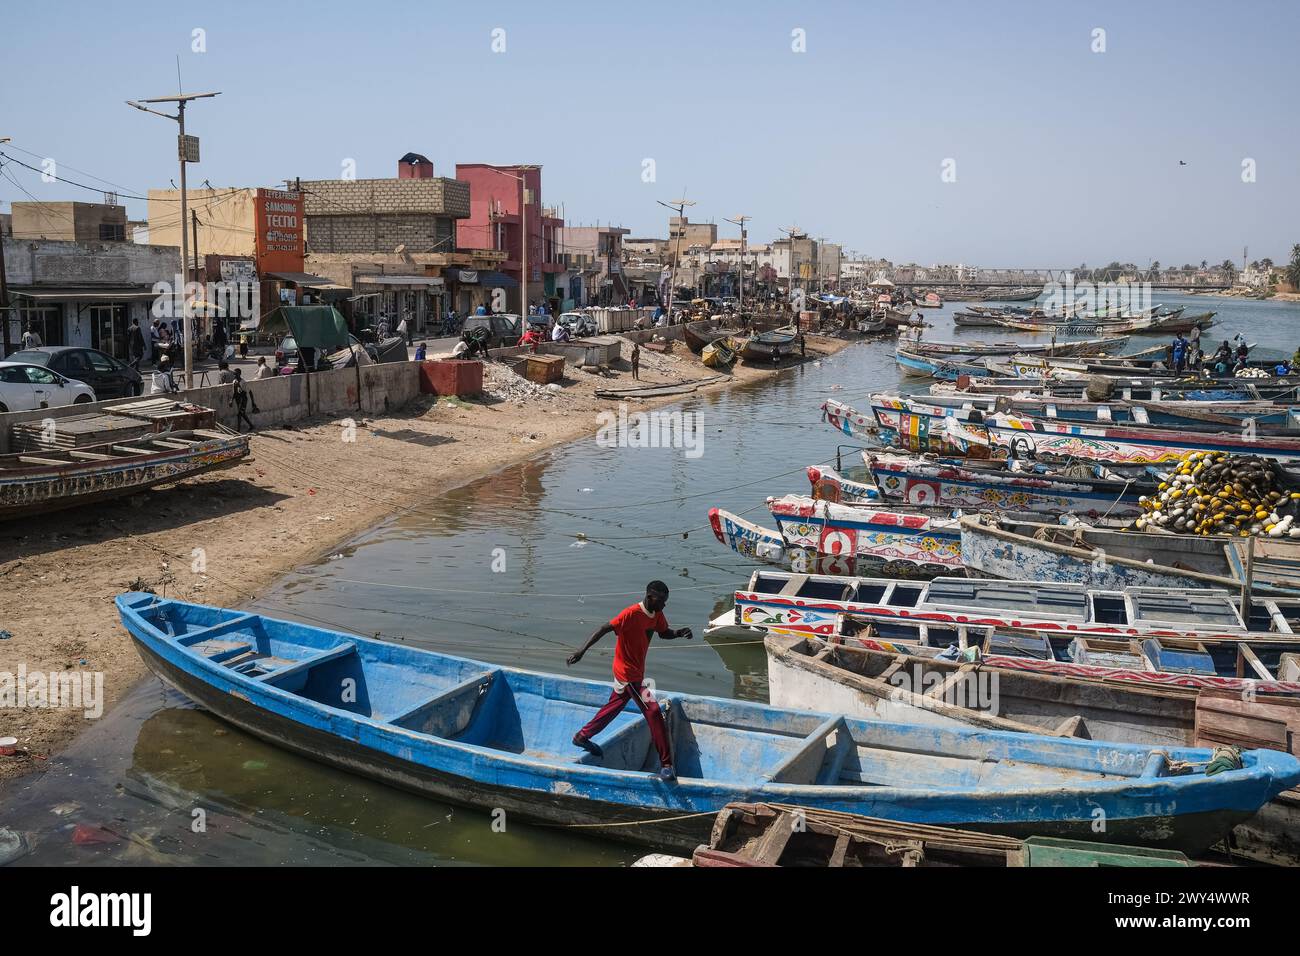 Nicolas Remene / Le Pictorium - Viertel Guet Ndar in Saint-Louis, Senegal - 31/03/2024 - Senegal / Saint-Louis / Saint-Louis - Fischerboote, eine der wichtigsten wirtschaftlichen Aktivitäten in Saint-Louis, Senegal, am 31. März 2024. Quet Ndar ist ein Fischerviertel in Saint-Louis, Senegal, das auch für seine höchste Bevölkerungsdichte der Welt bekannt ist. Es liegt an der Langue de Barbarie, die seit Jahren mit Küstenerosion konfrontiert ist. Heute ist der Bezirk von der starken Schwelle bedroht, die sein Ufer zerstört hat Stockfoto